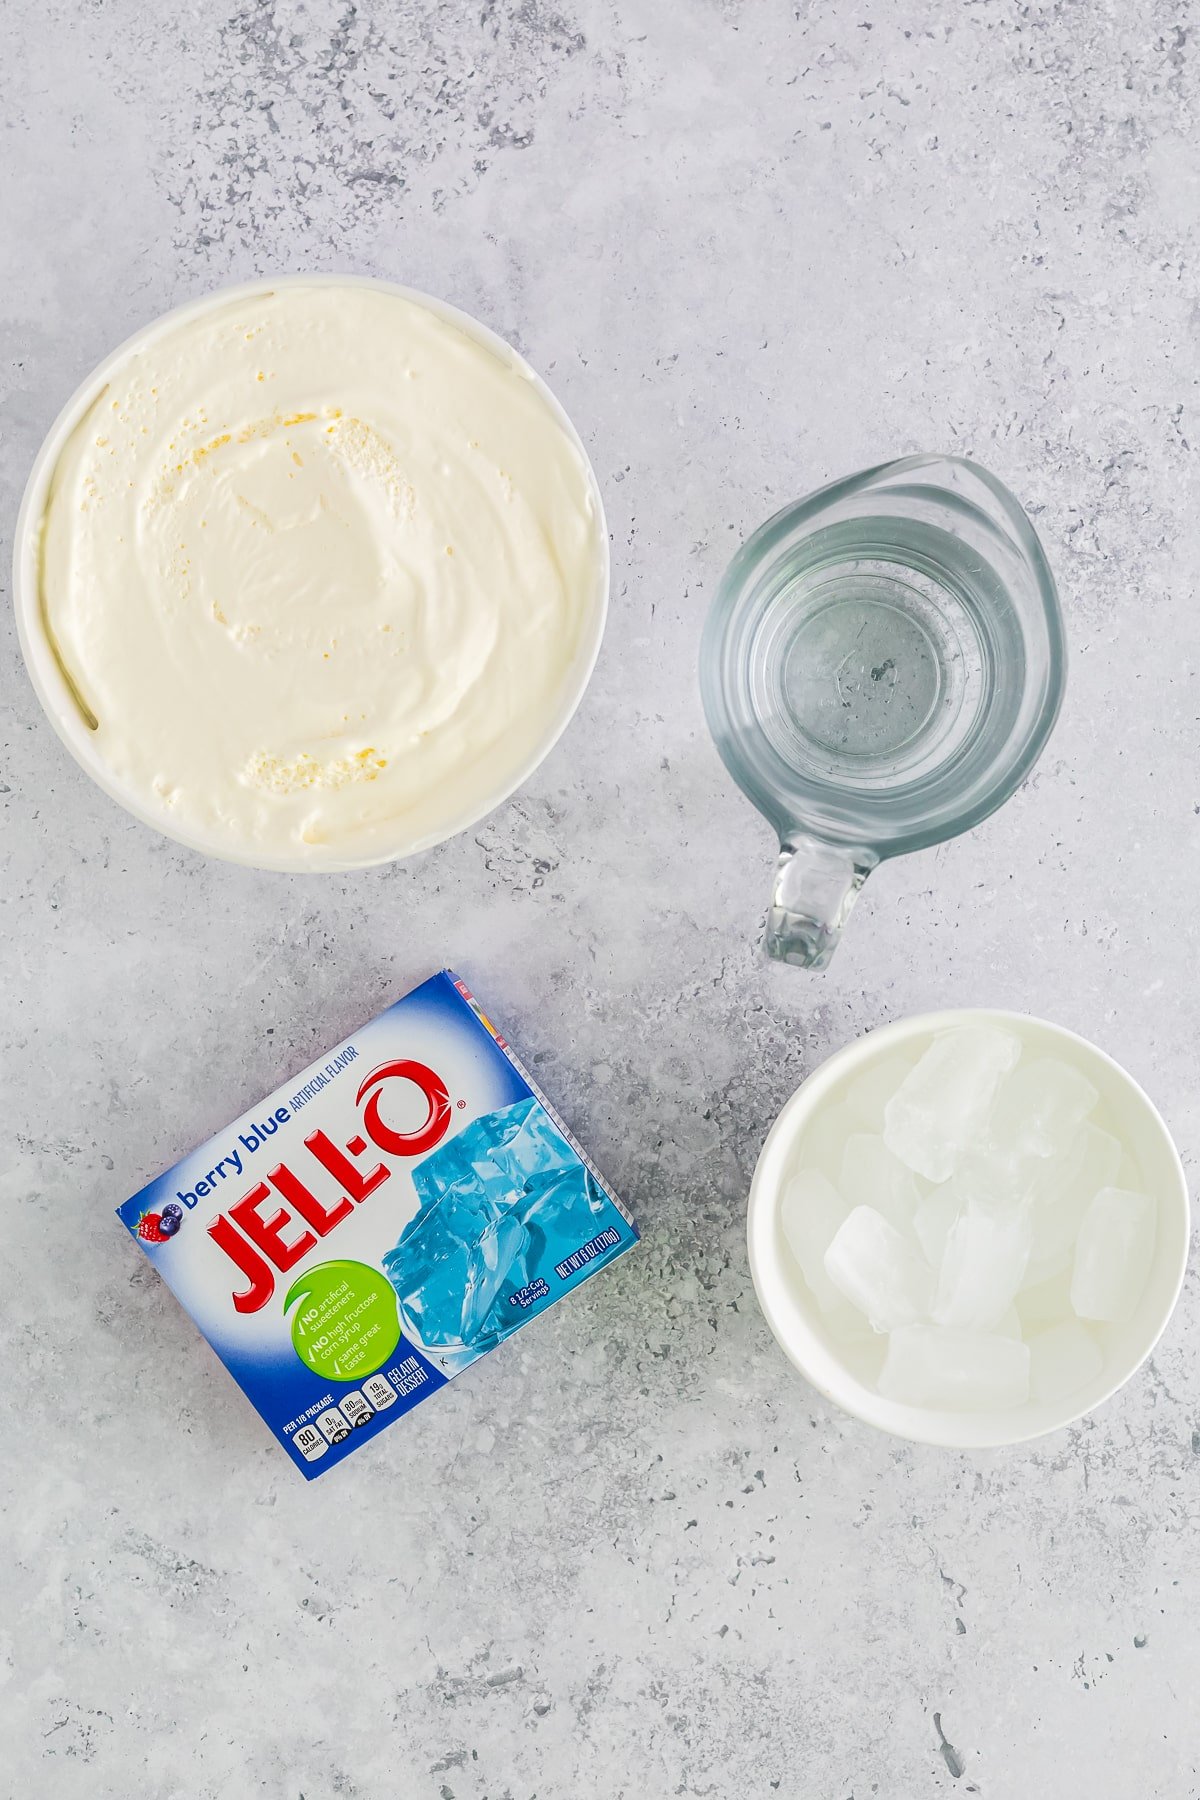 ingredients needed for jello dessert